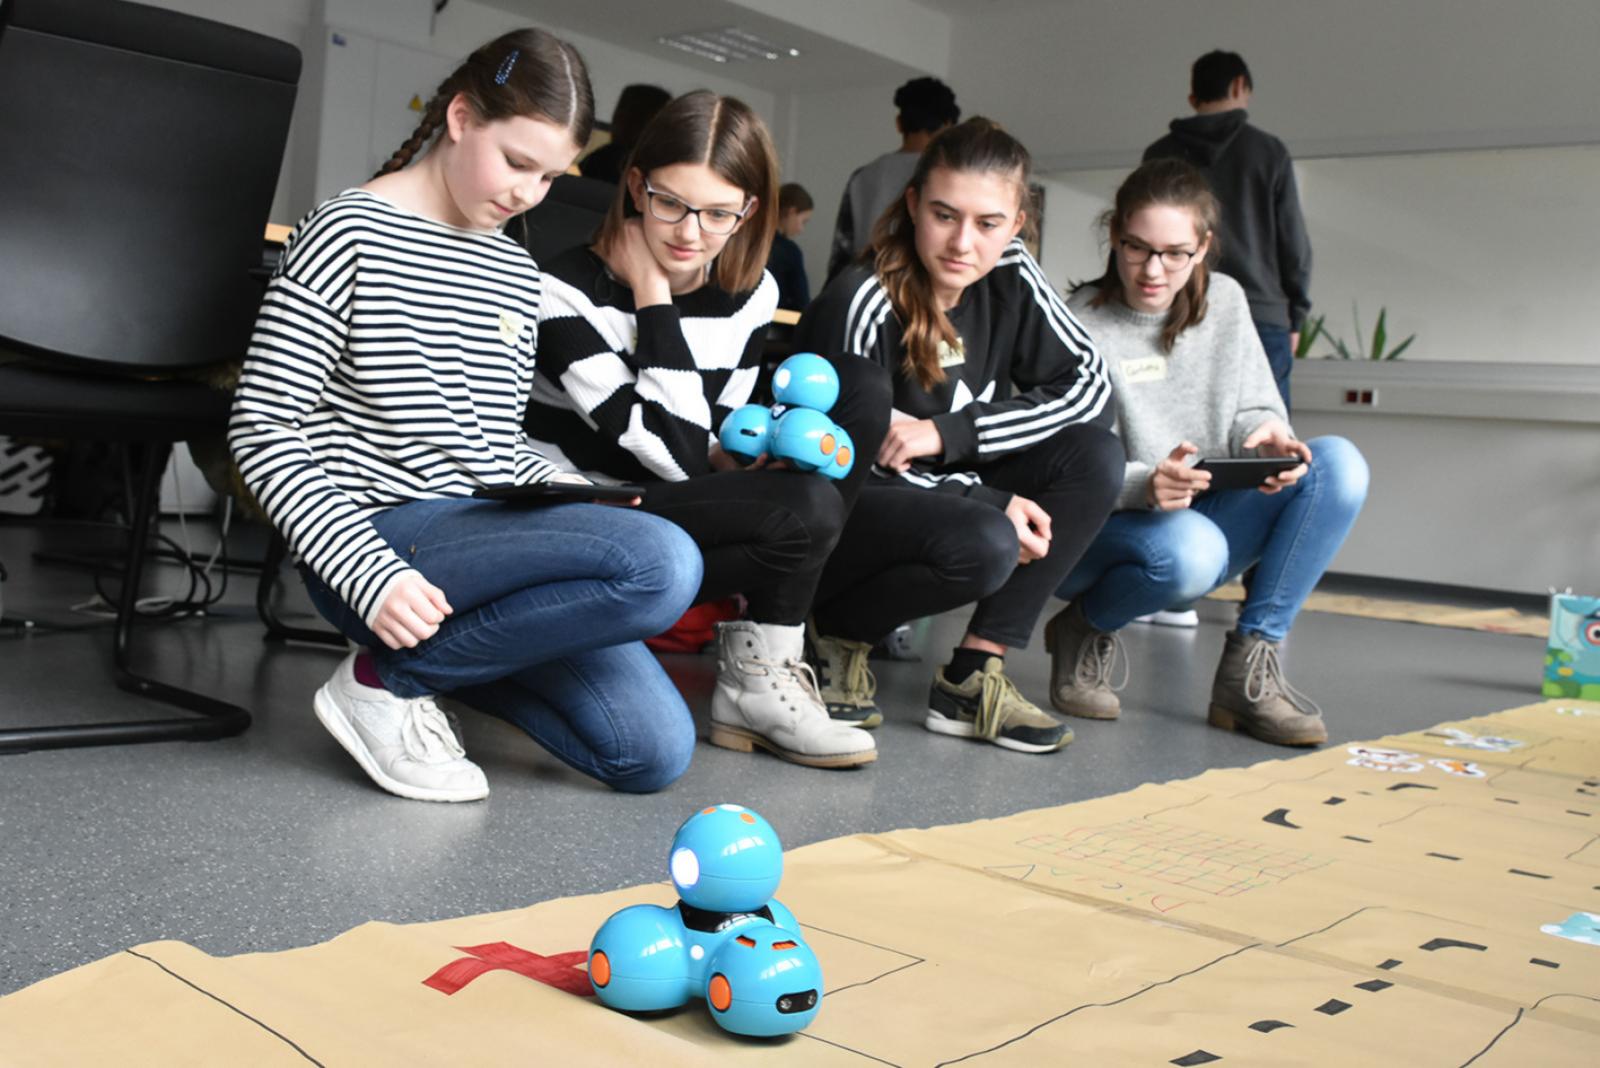 Beim Girls‘ Day an der FH Münster heißt es für die Schülerinnen: Technik selbst testen und ausprobieren. (Foto: FH Münster/Pressestelle)